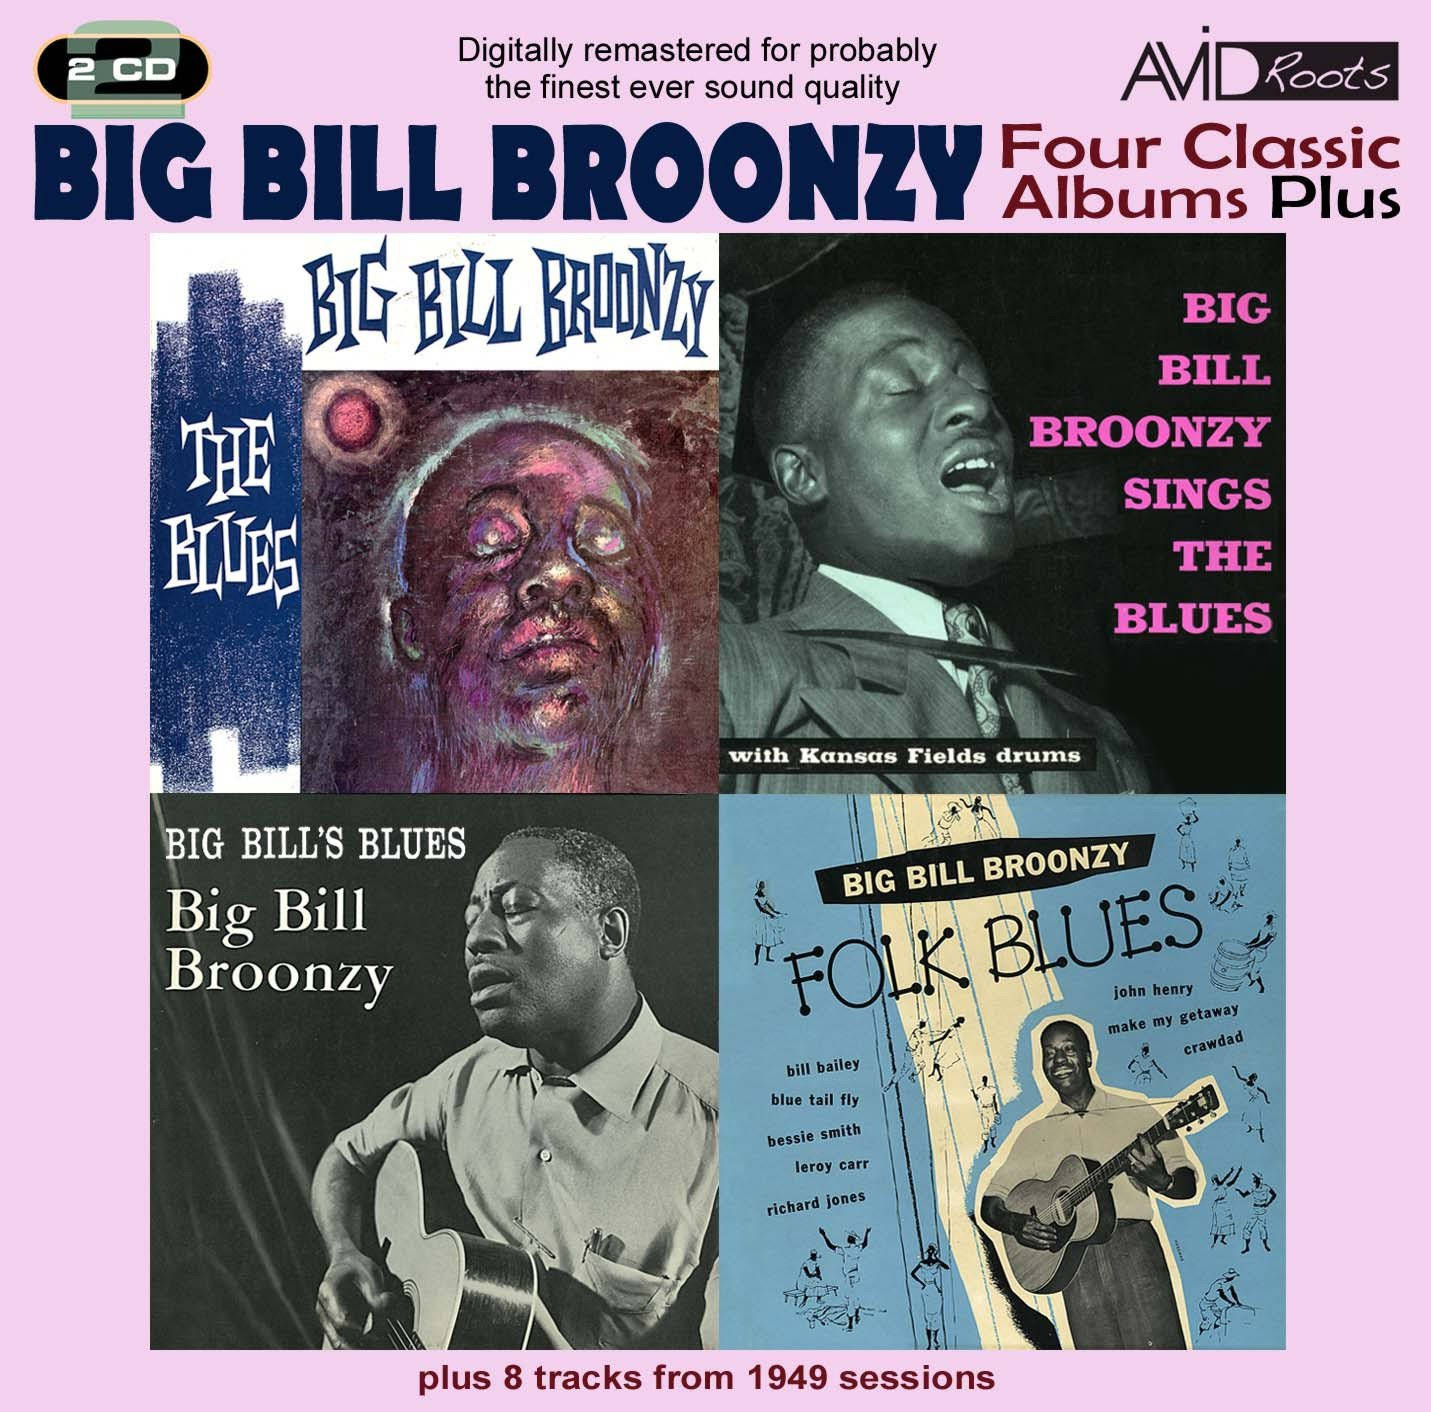 Big Bill Broonzy Four klassiske album plus treffers tilbyder en gul overlay til at se og nyde sommermåneden. Wallpaper